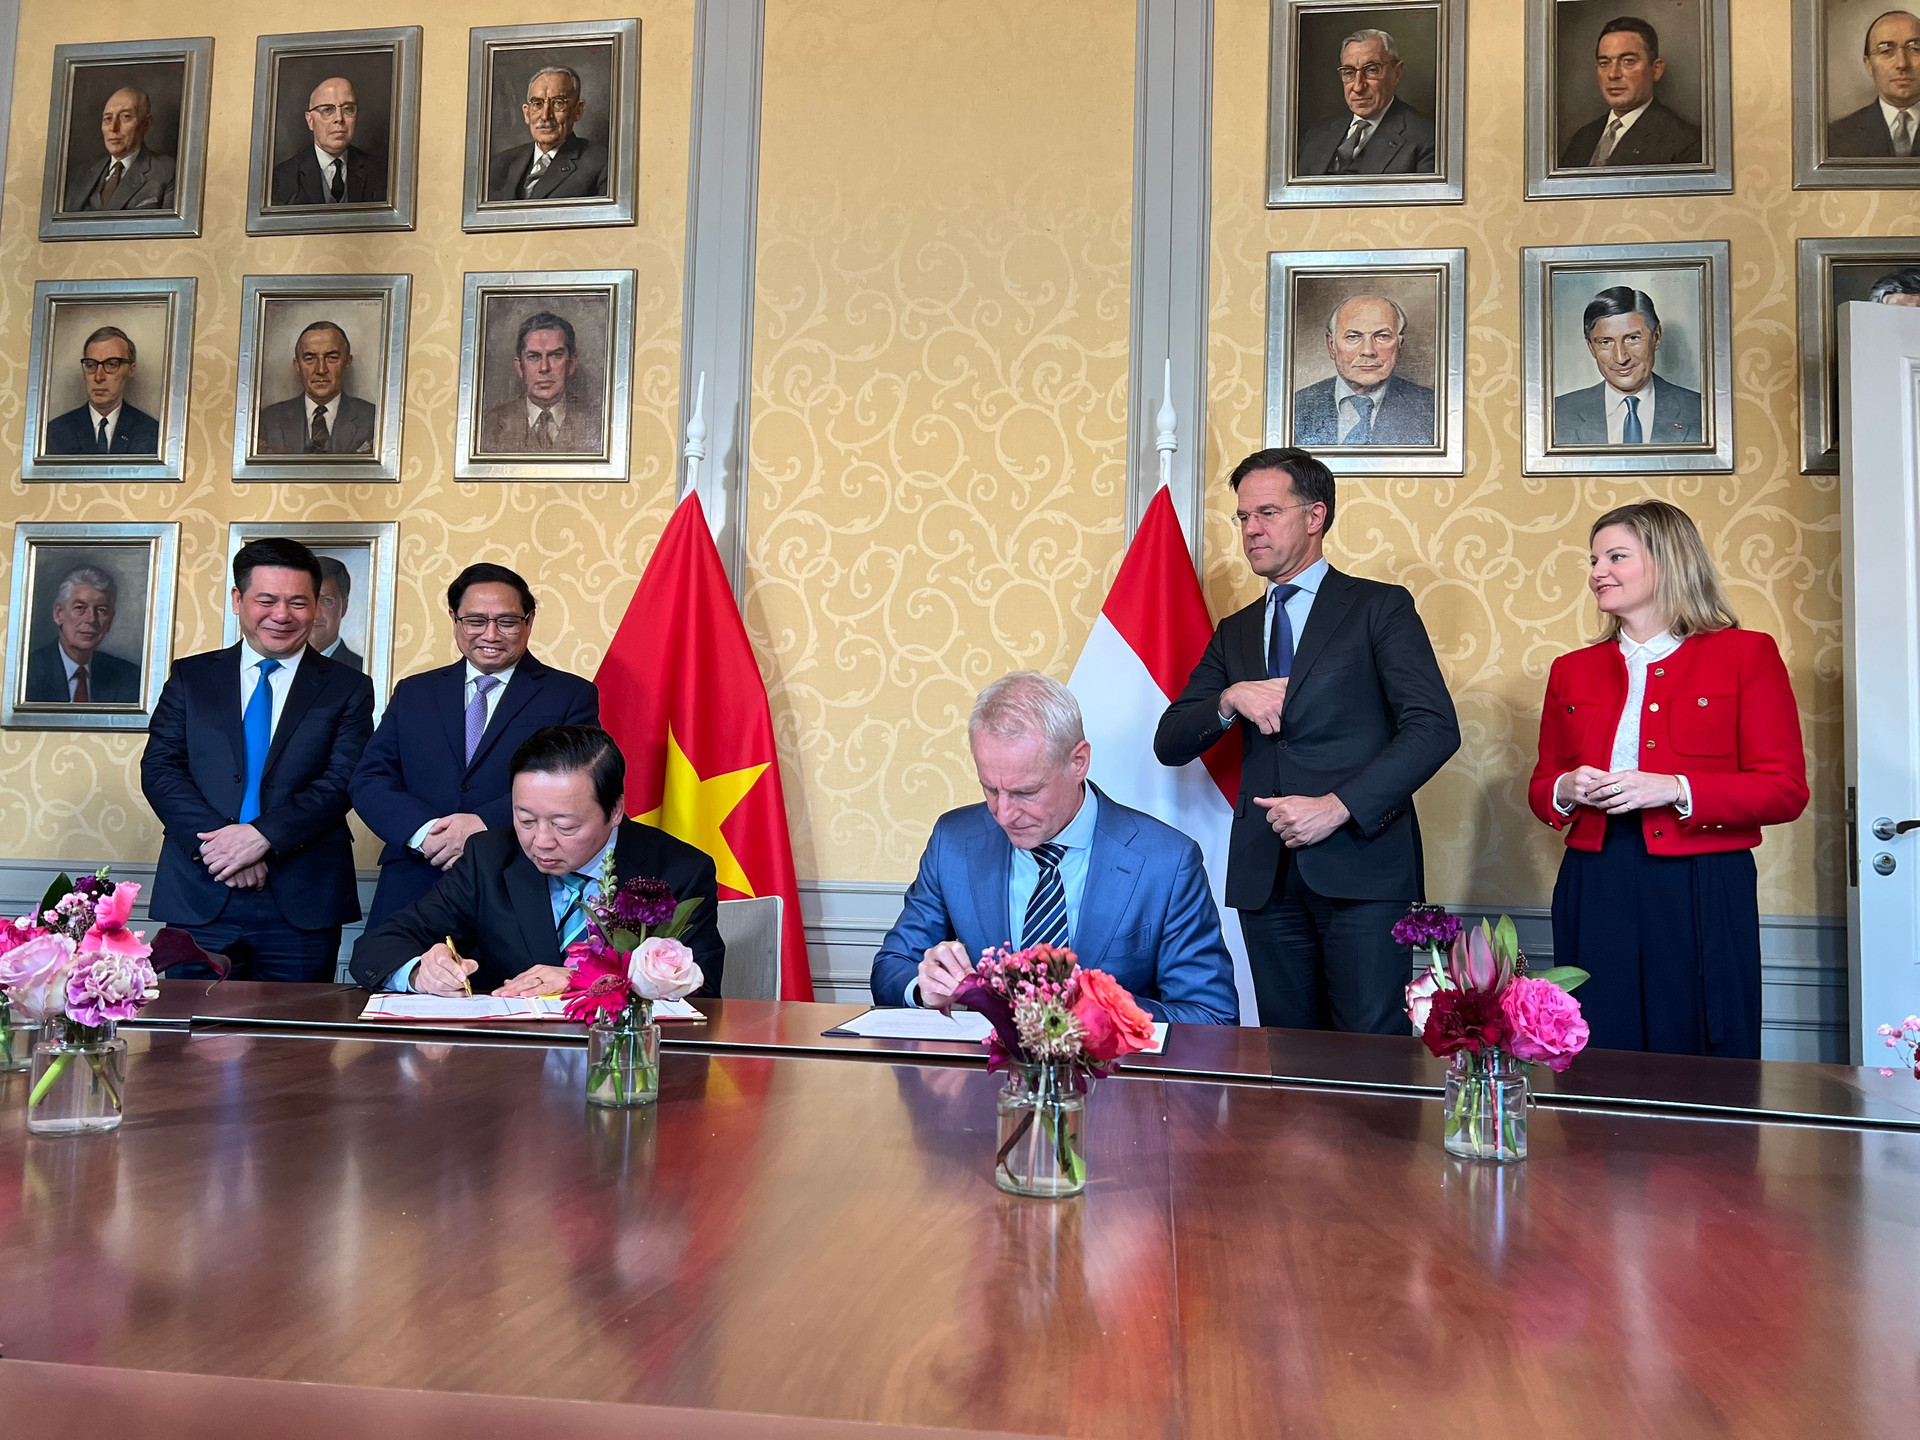 Việt Nam và Hà Lan thúc đẩy hợp tác về quản lý nước